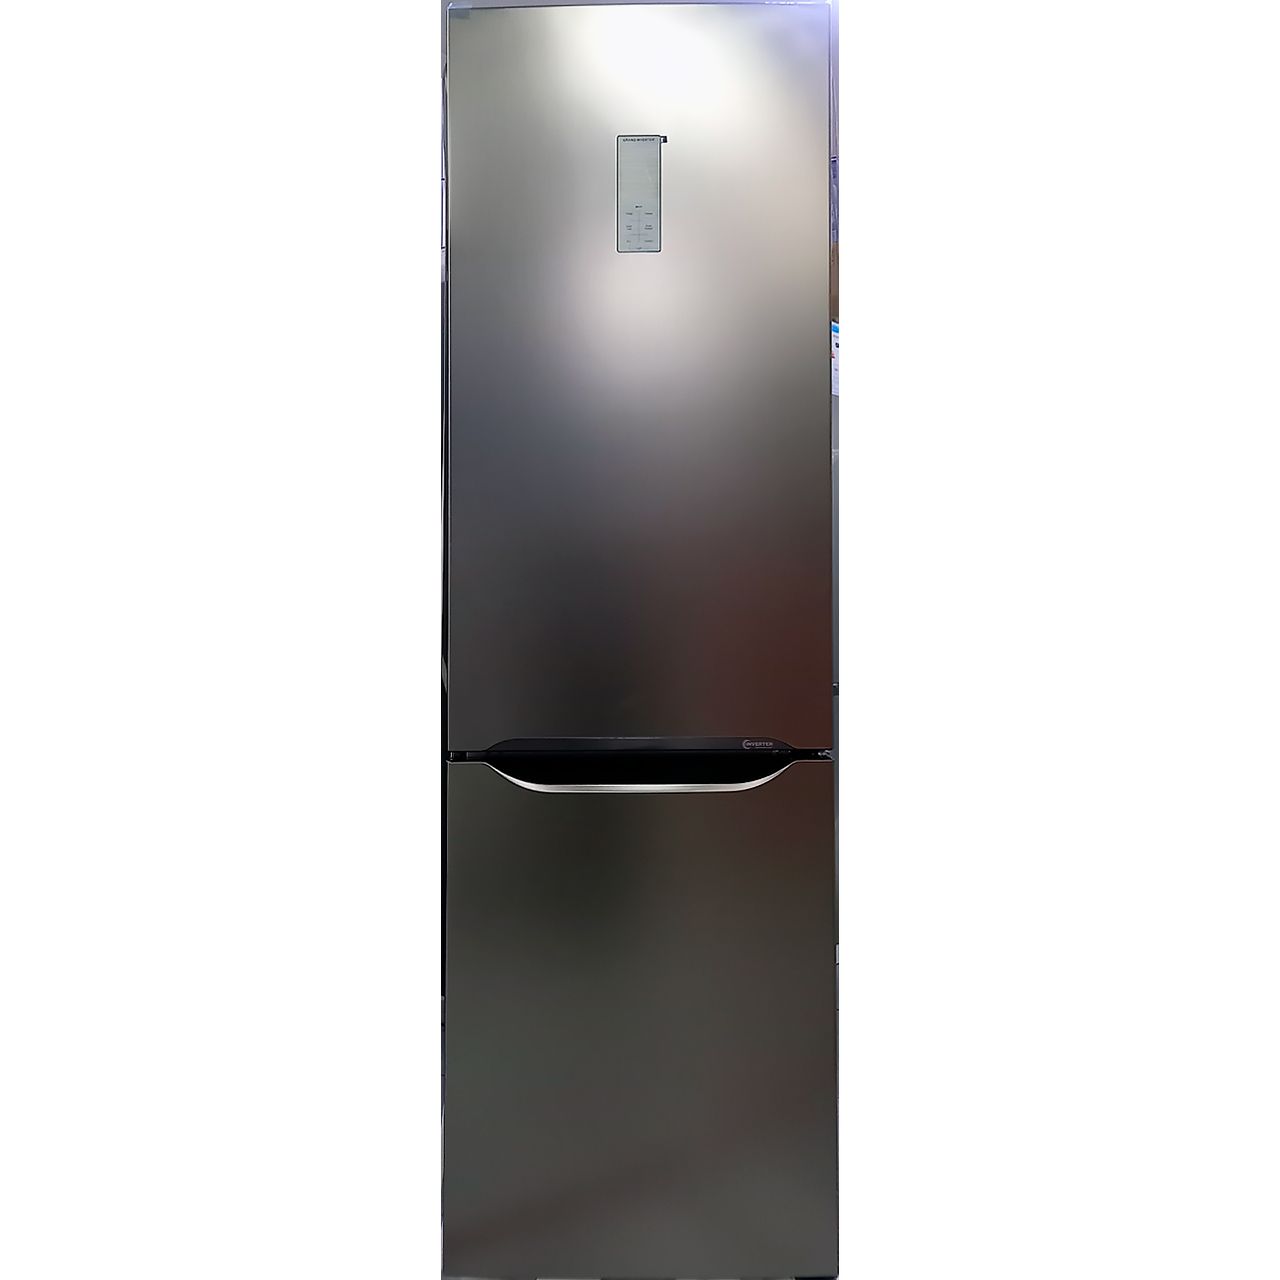 Холодильник двухкамерный Shivaki 350 литров